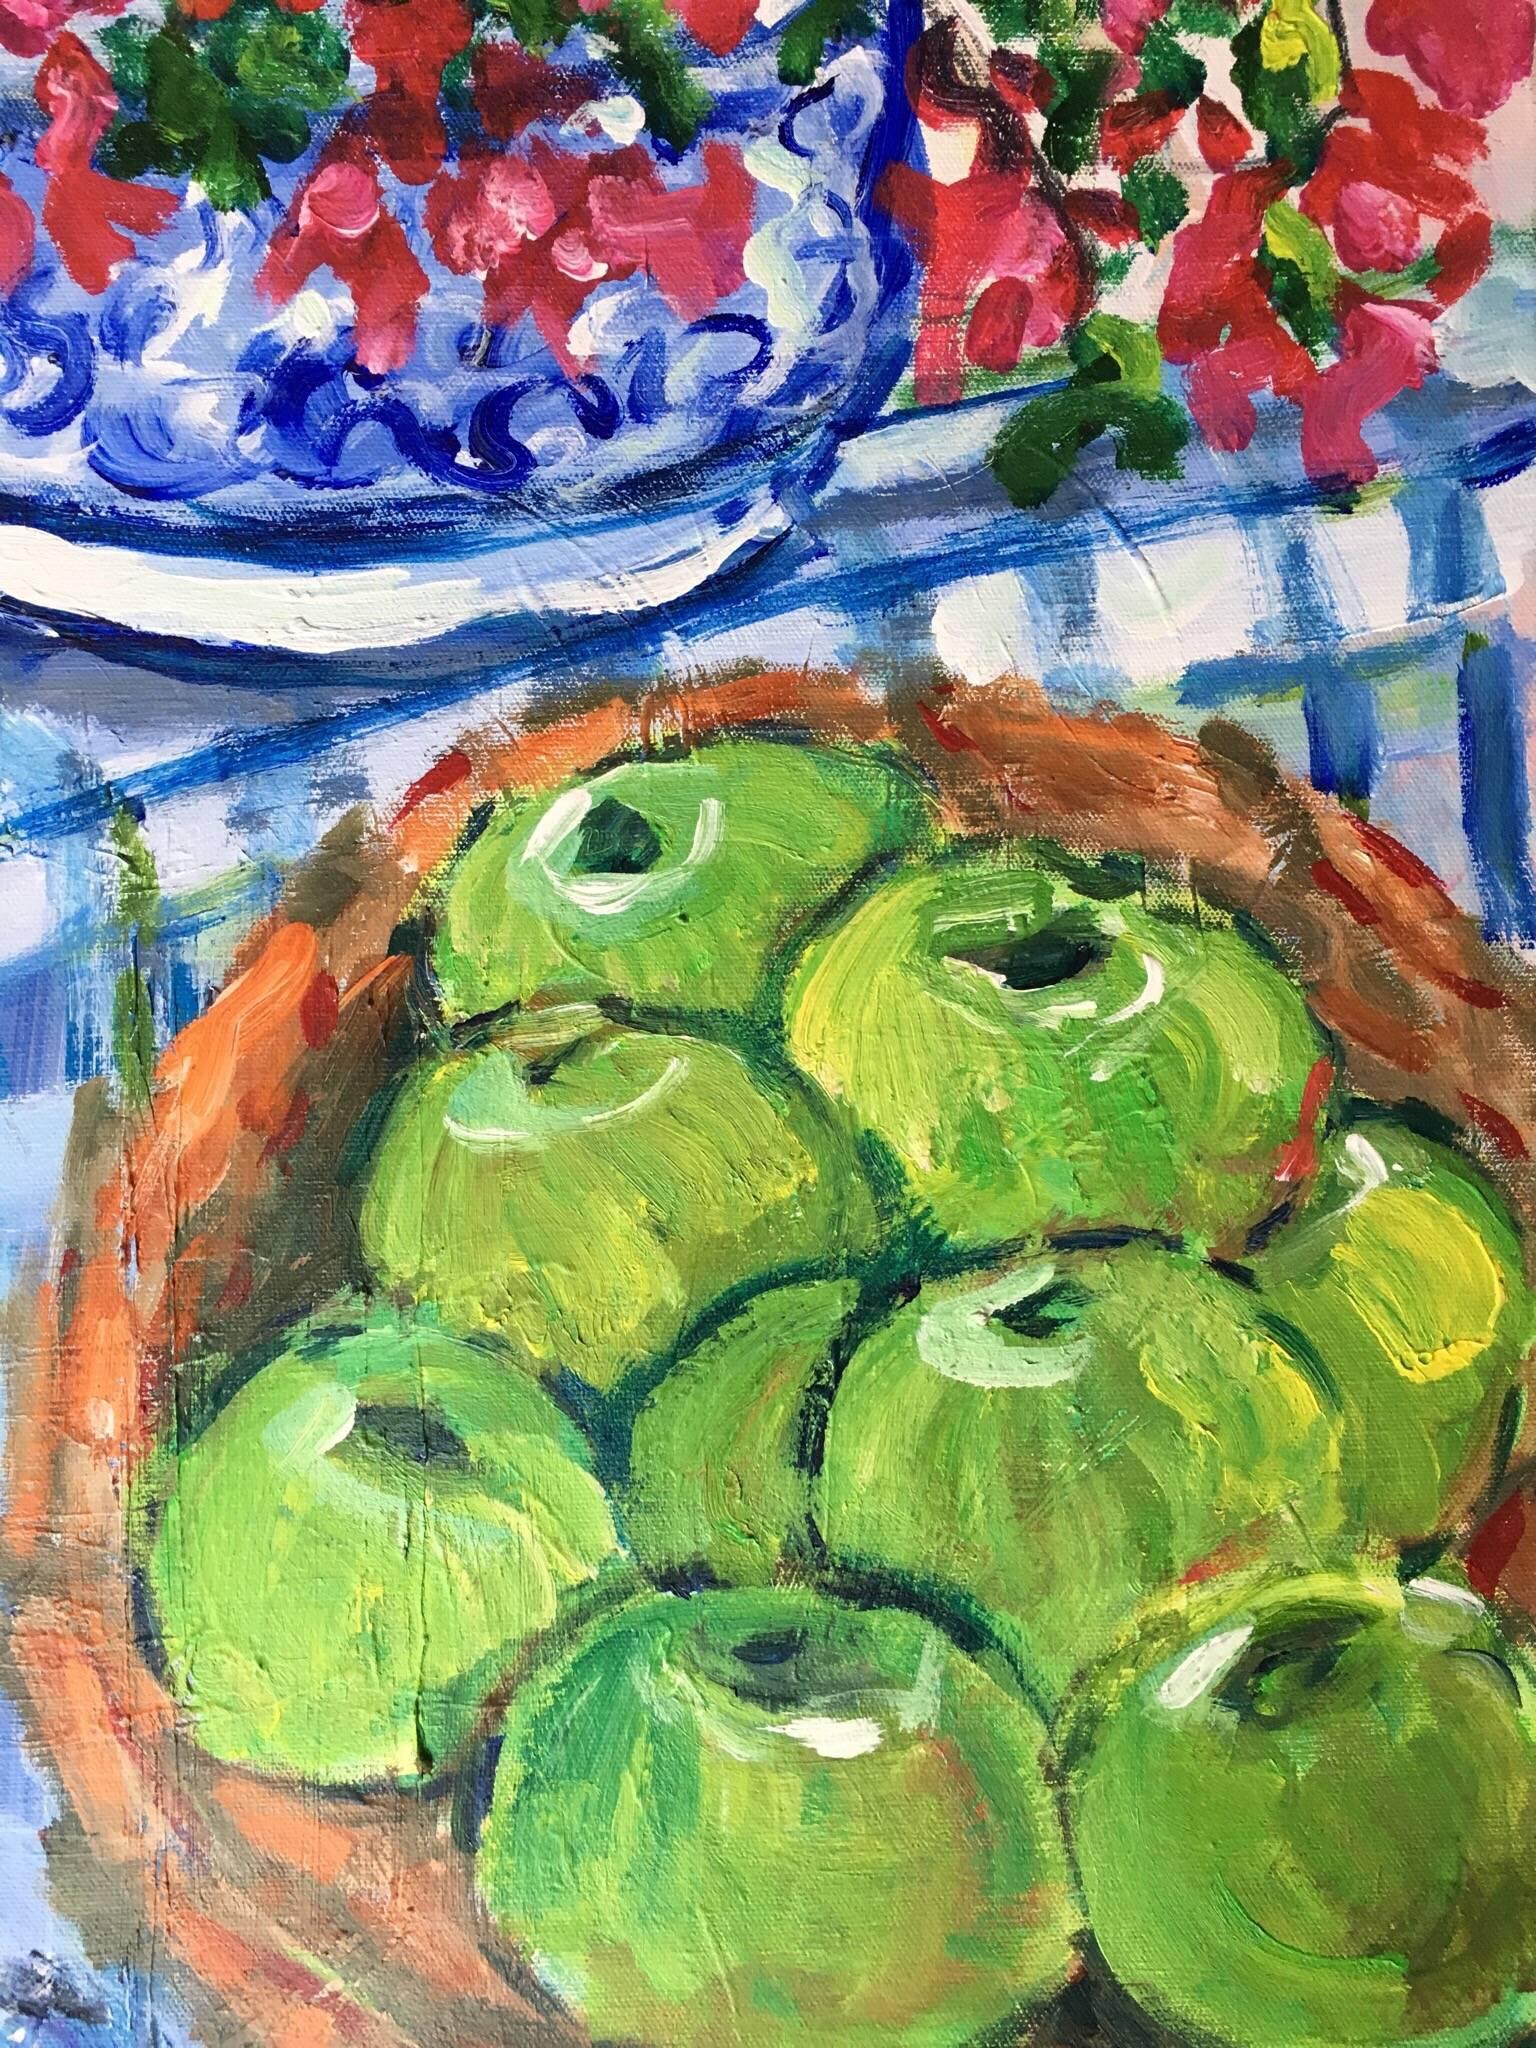 Impressionistisches Stillleben Äpfel und Blumen, Ölgemälde
von Pamela Cawley, Britin, 20. Jahrhundert
ölgemälde auf Leinwand, ungerahmt
brett: 20 x 16 Zoll 

Beeindruckendes originales impressionistisches Ölgemälde der britischen Künstlerin Pamela